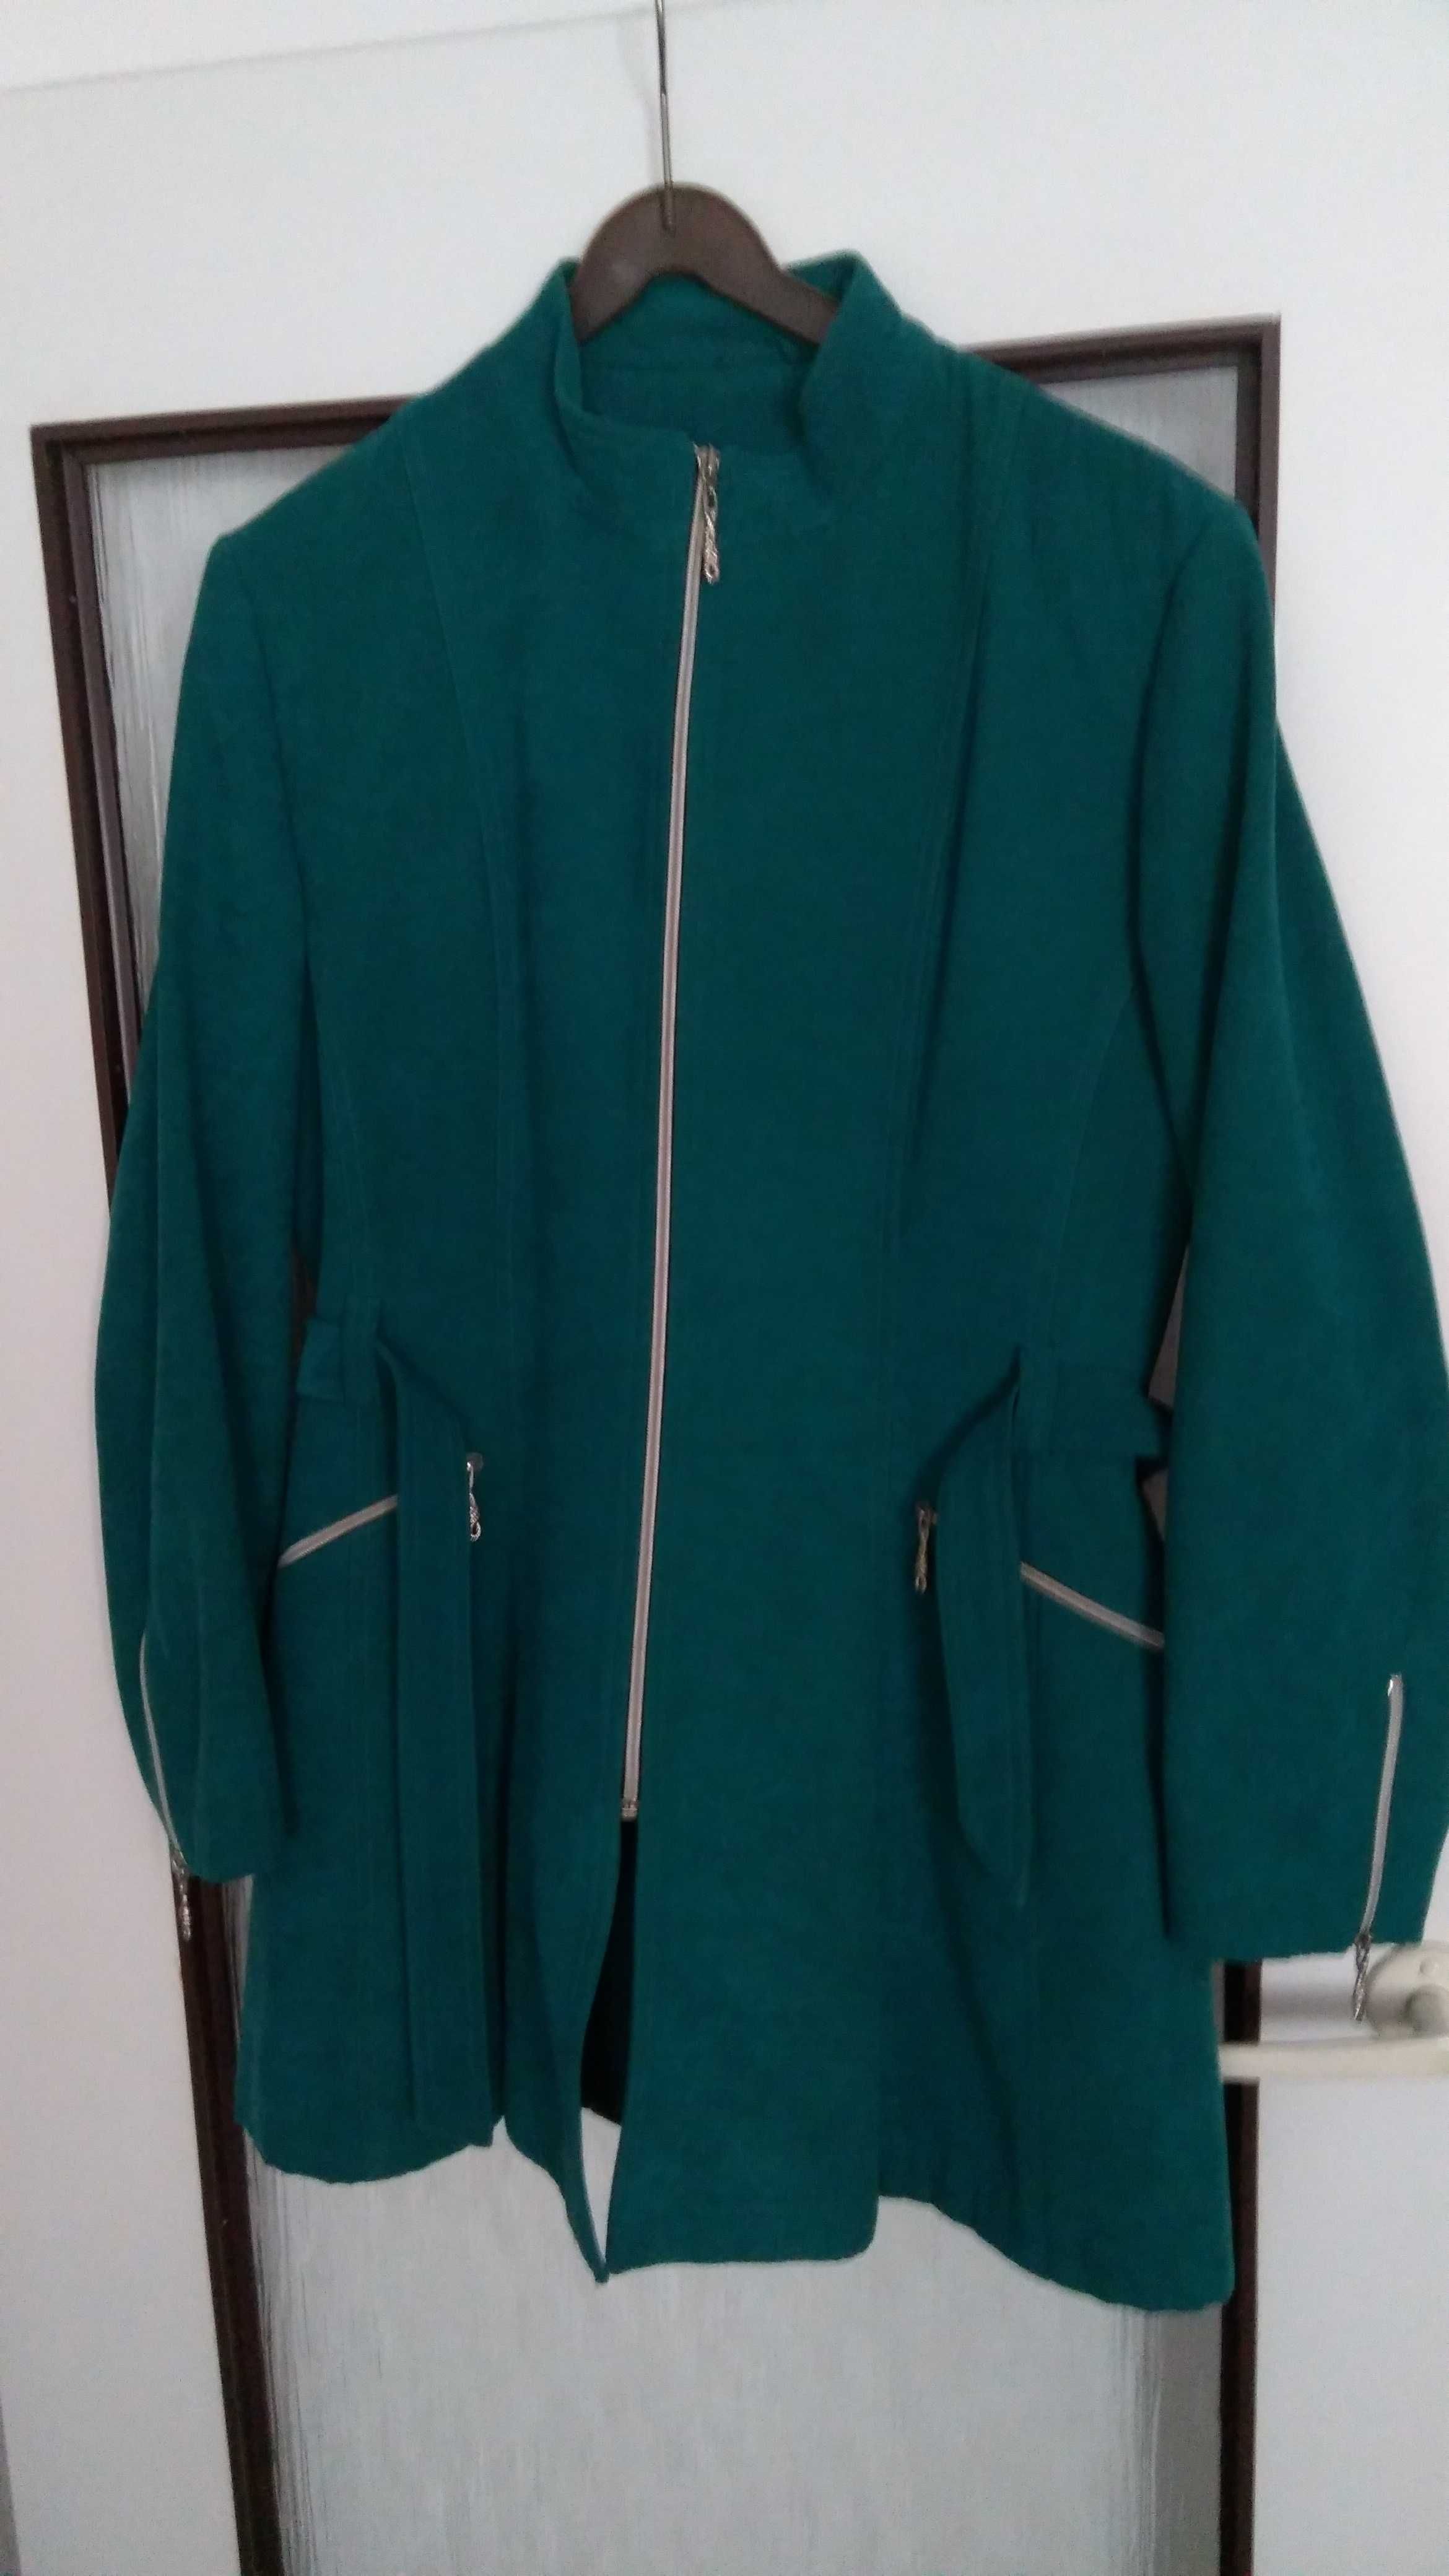 Elegancka dłuższa kurtka, płaszczyk zielony damski rozmiar M/L wiosna